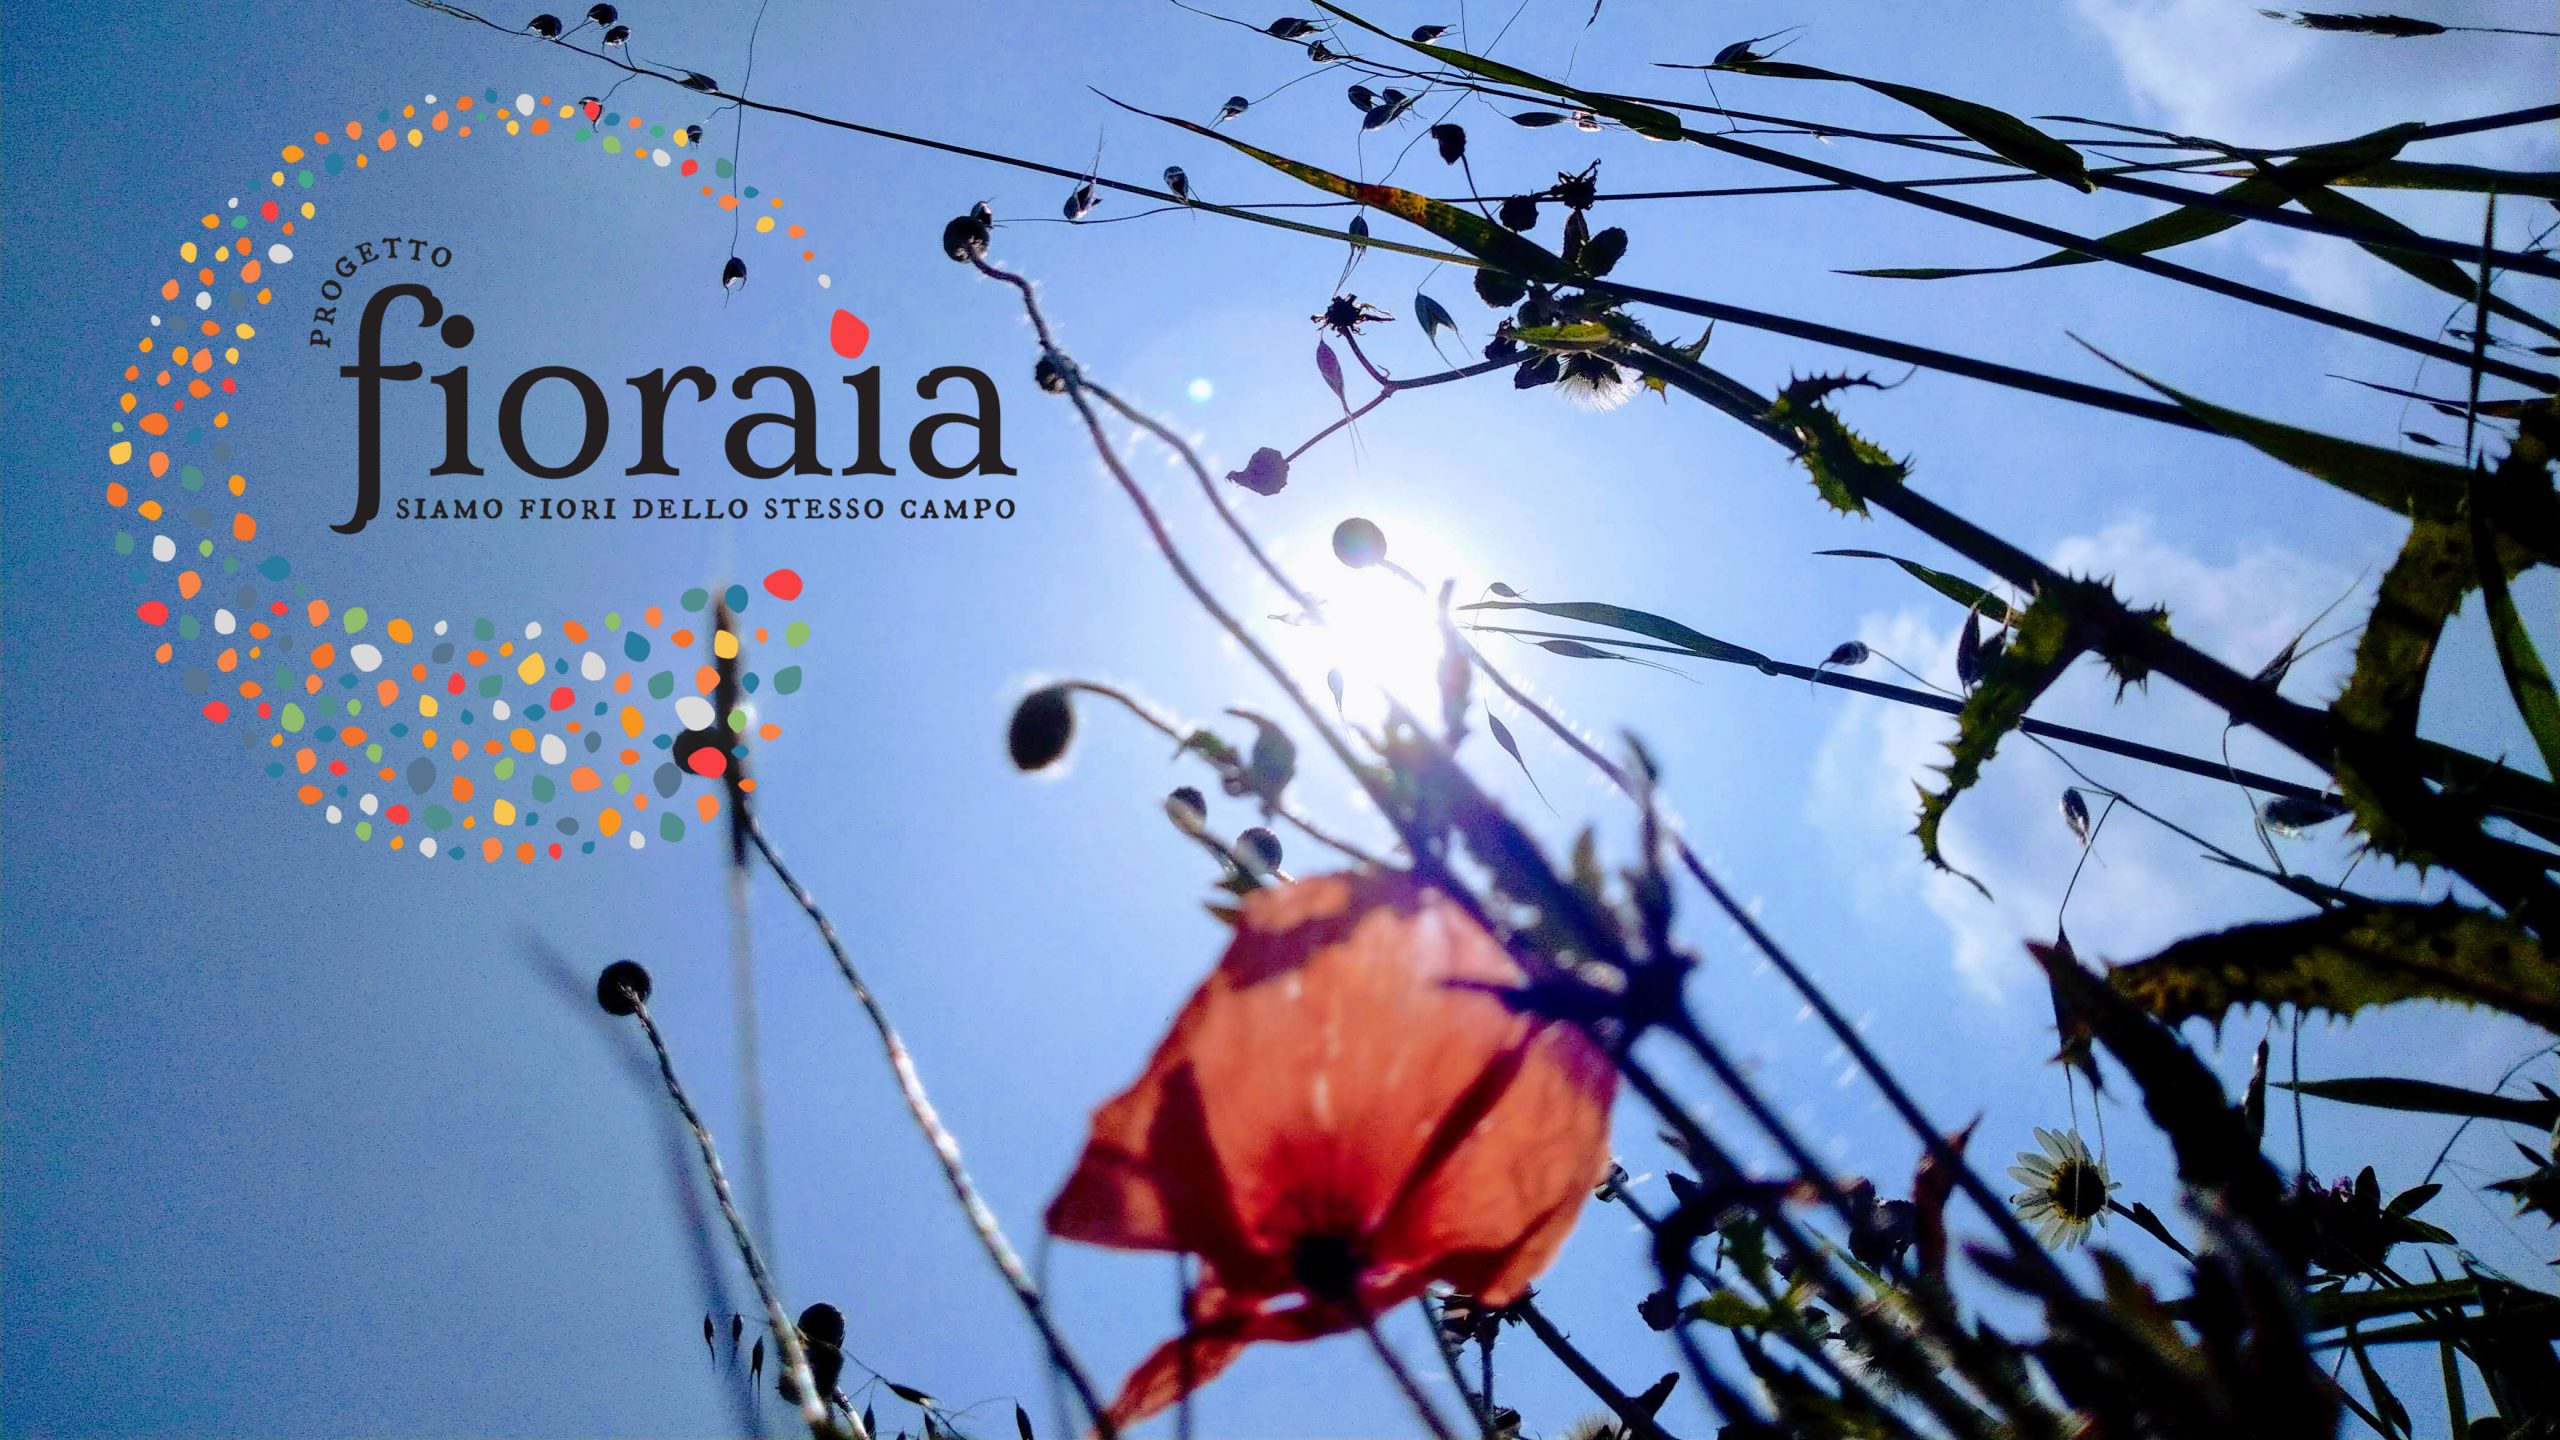 Project Fioraia – A new landscaper for biodiversity